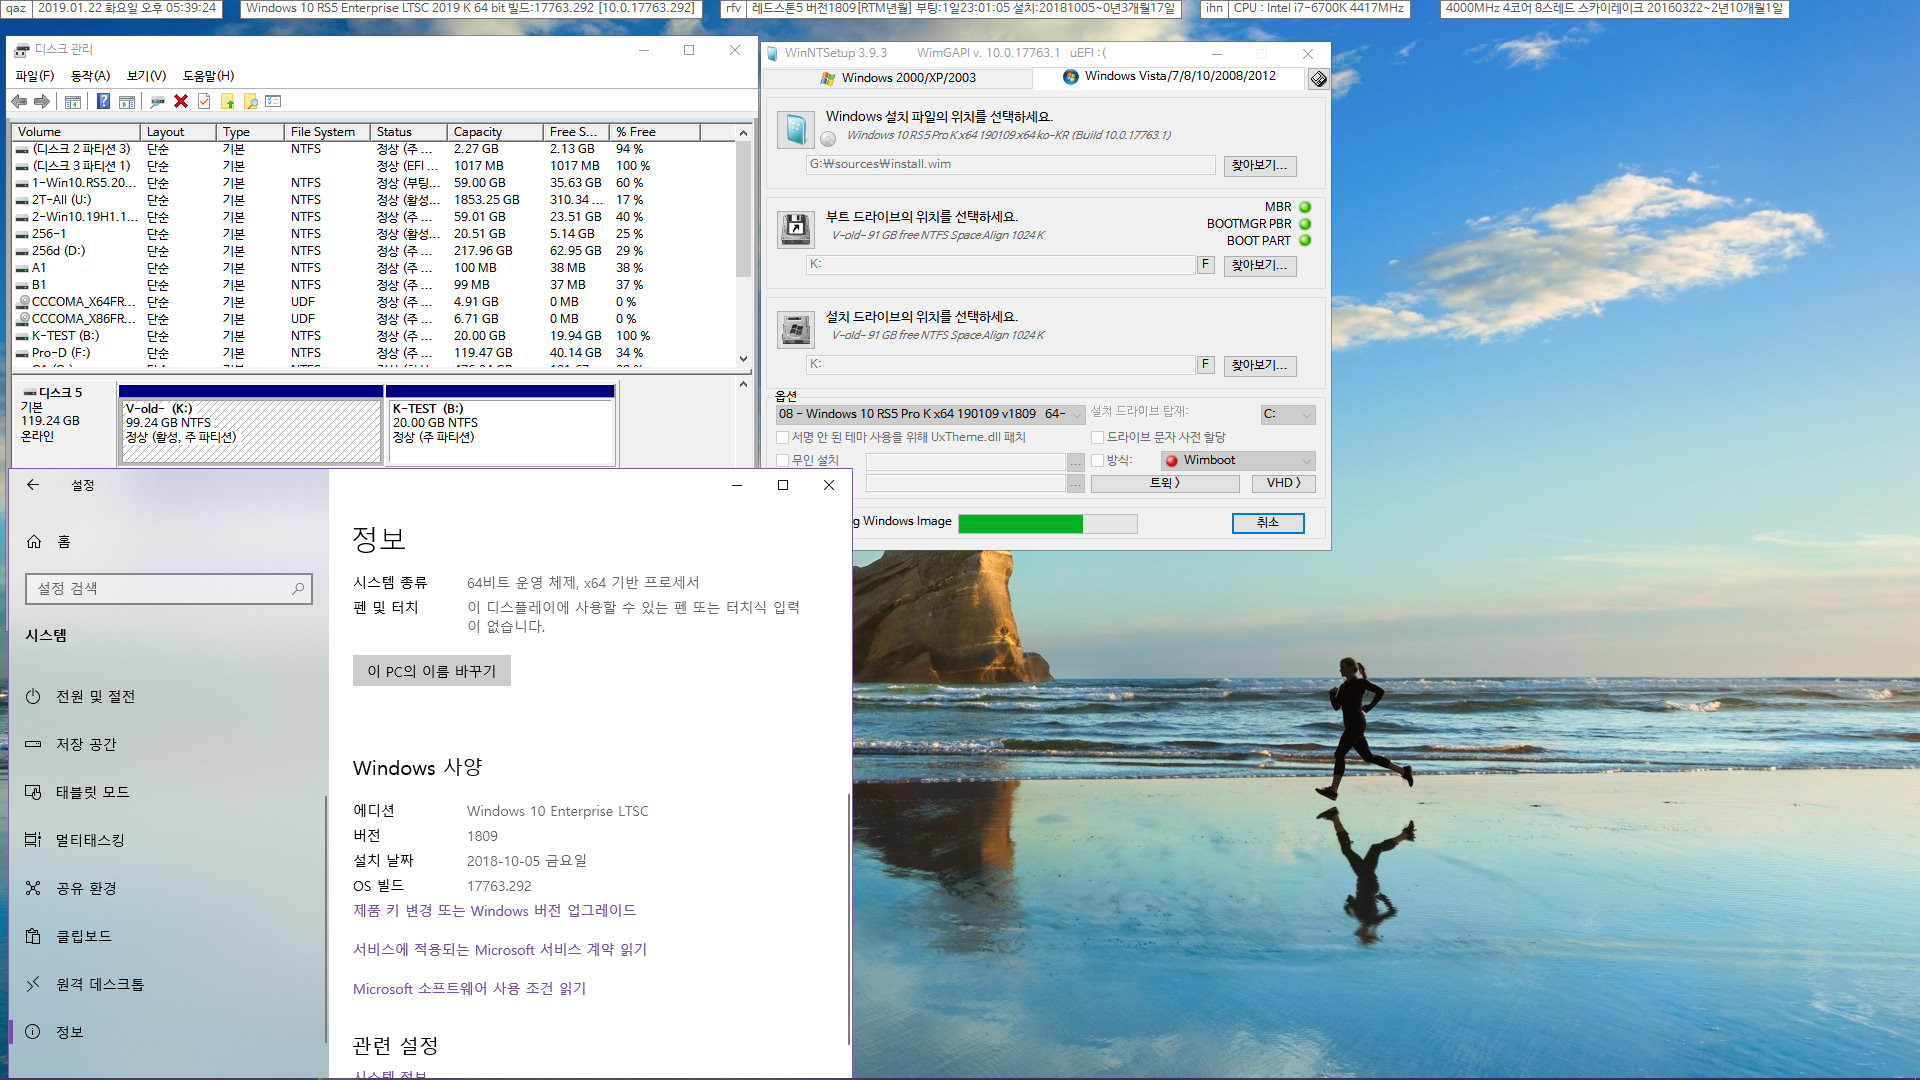 MBR2GPT.exe 윈도 내장 명령어 테스트 - 실컴에서 다른 디스크에 있는 윈도를 대상으로 테스트 2019-01-22_173924.jpg